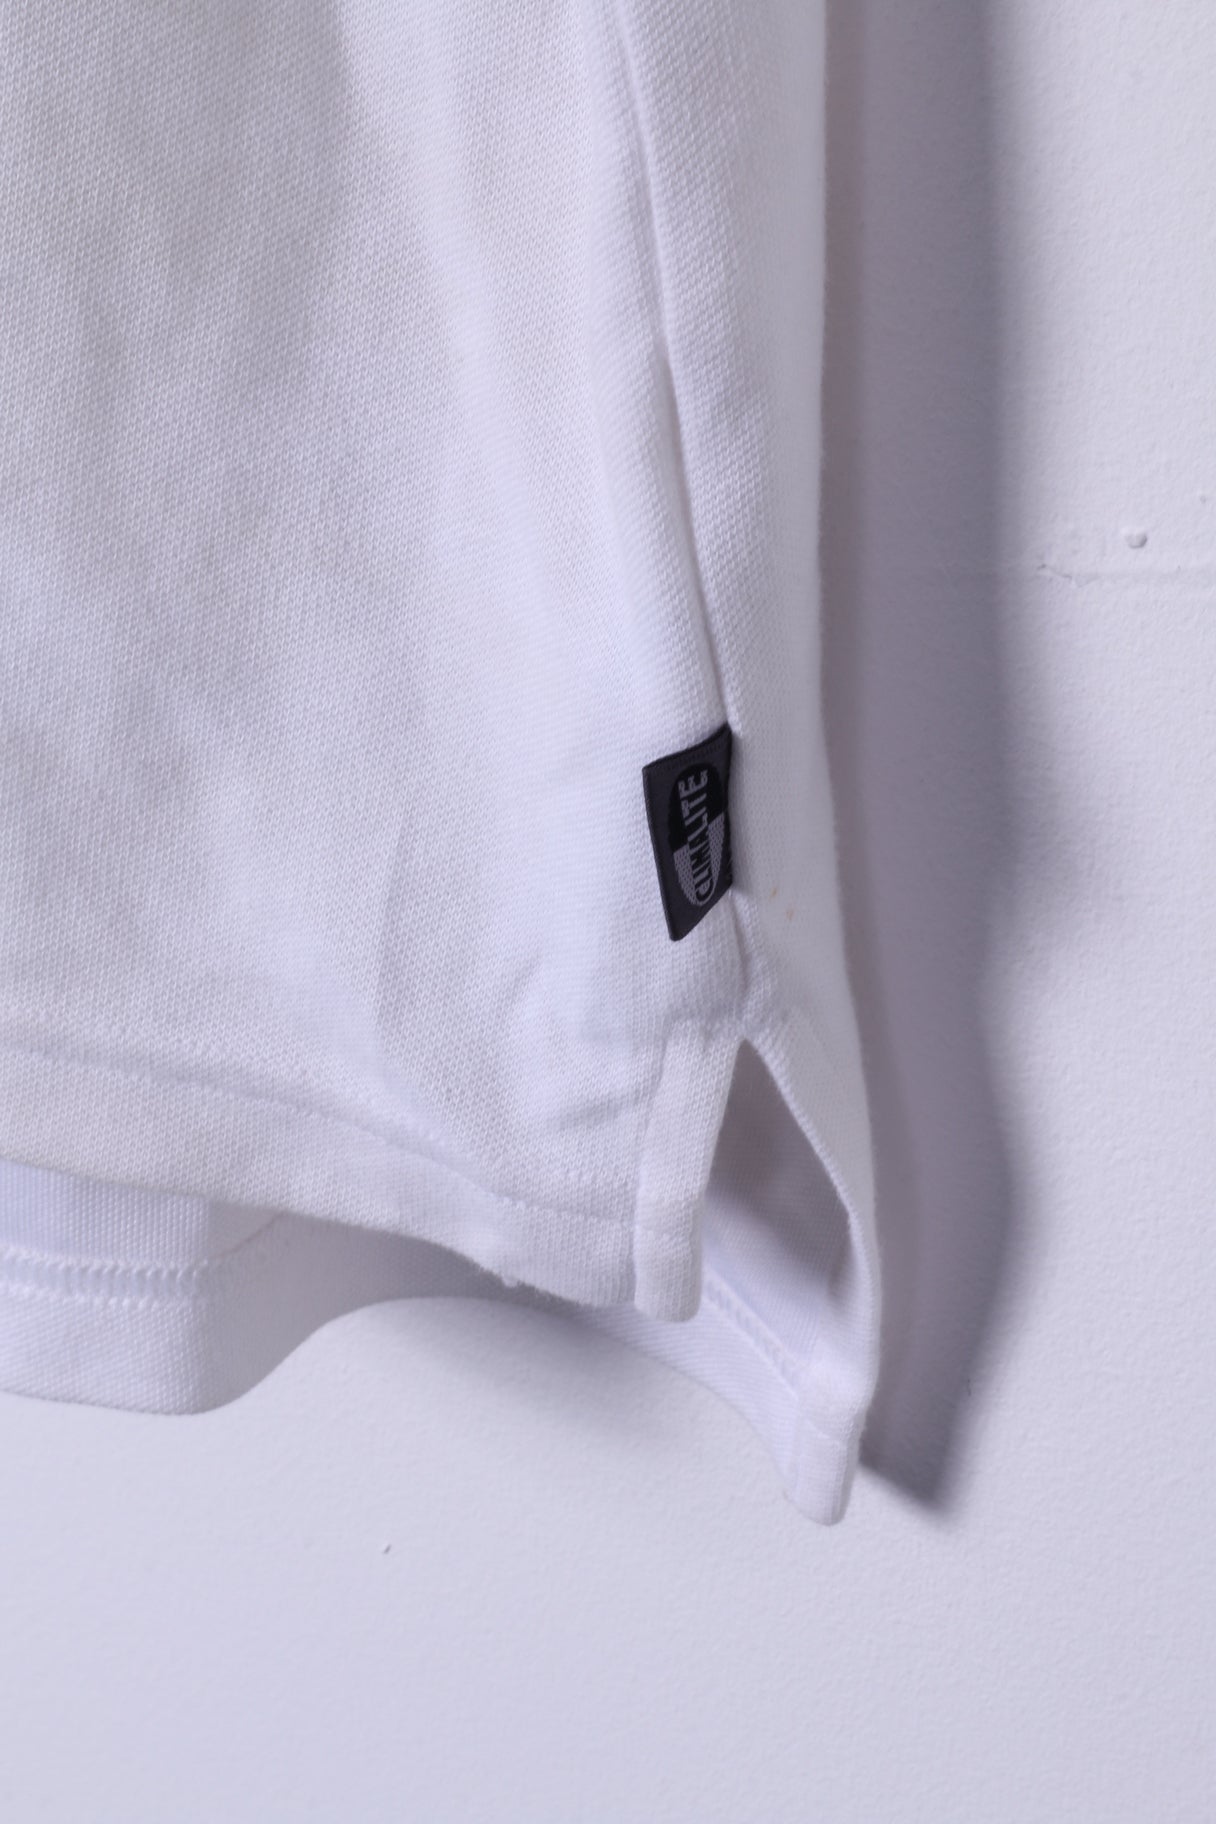 Polo Adidas XL da uomo in cotone elasticizzato Climalite bianco con foro in 1 banda